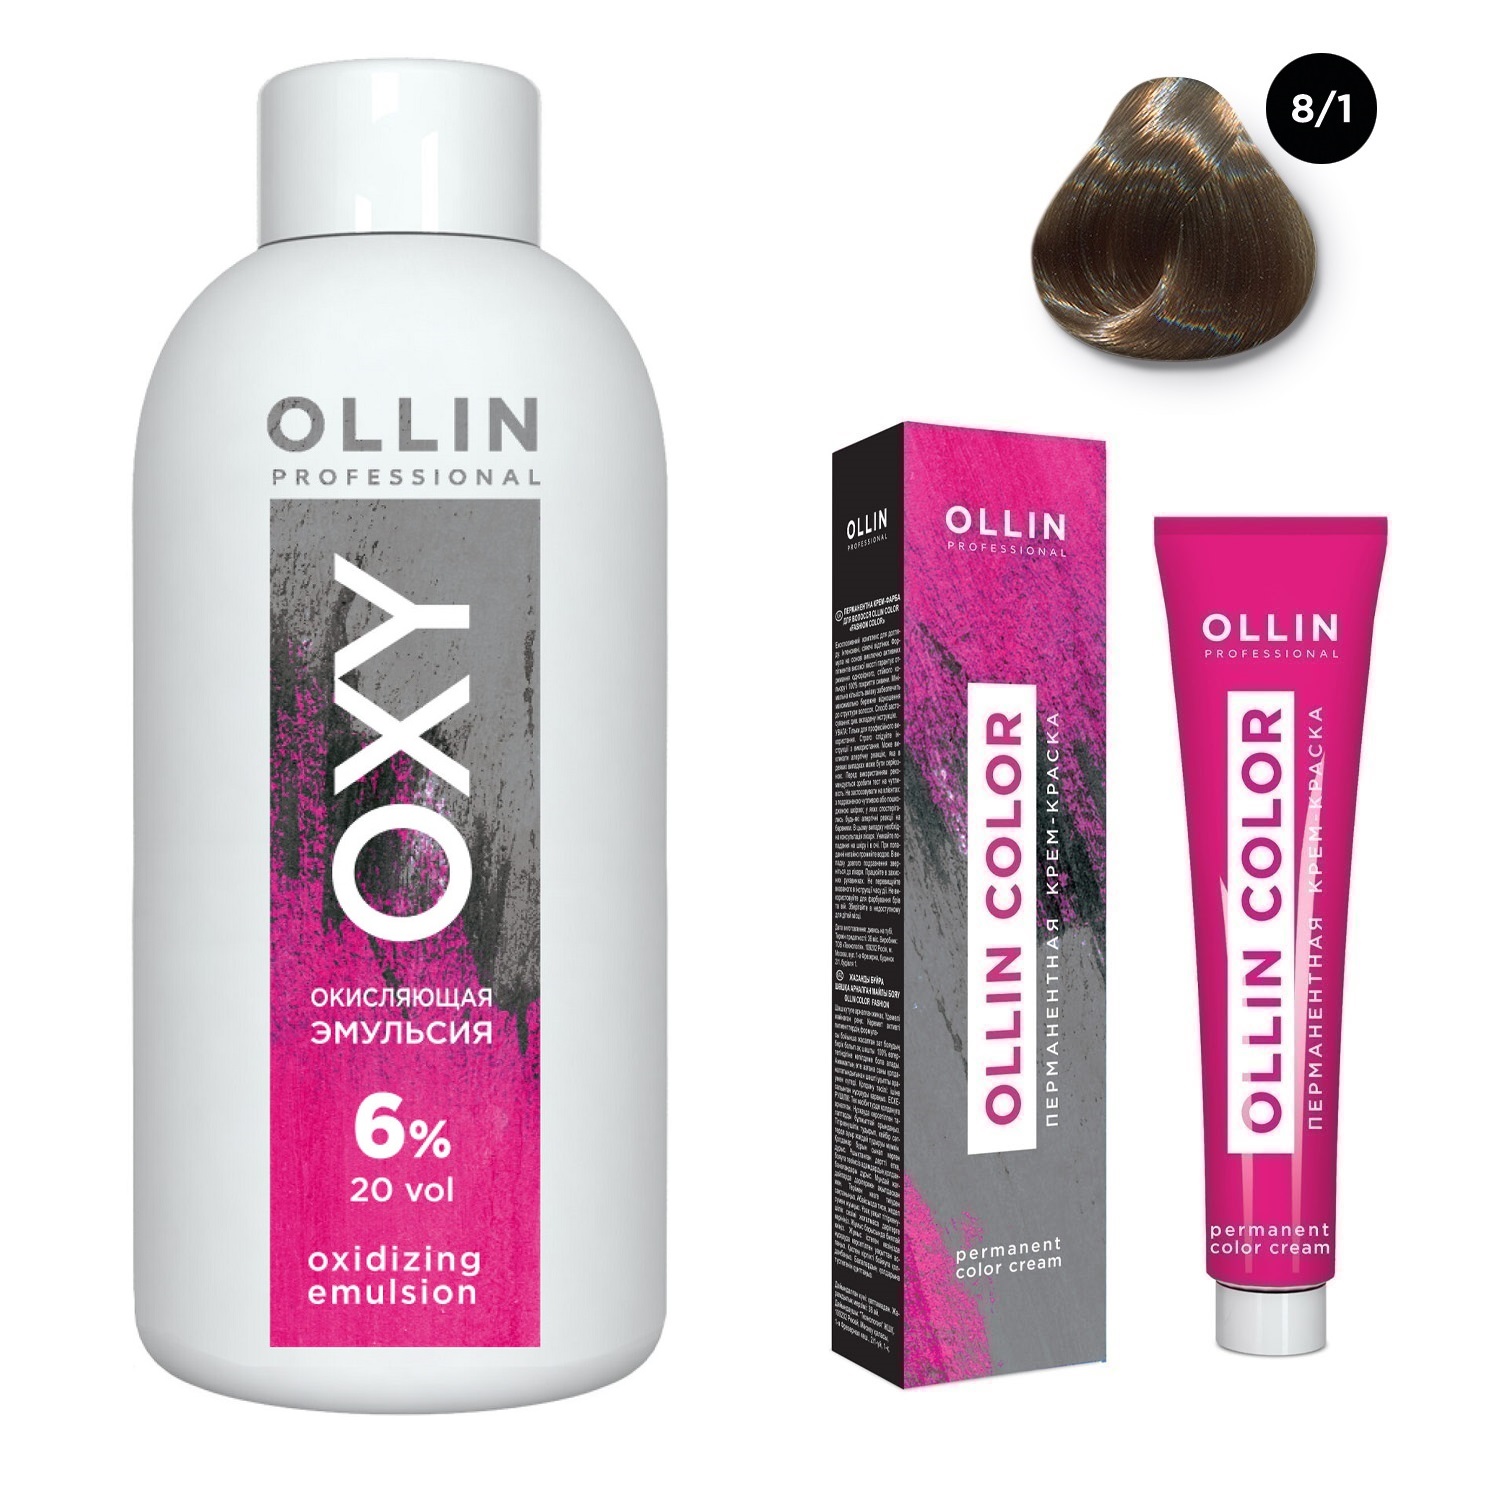 Ollin Professional Набор Перманентная крем-краска для волос Ollin Color оттенок 8/1 светло-русый пепельный 100 мл + Окисляющая эмульсия Oxy 6% 150 мл (Ollin Professional, Ollin Color)